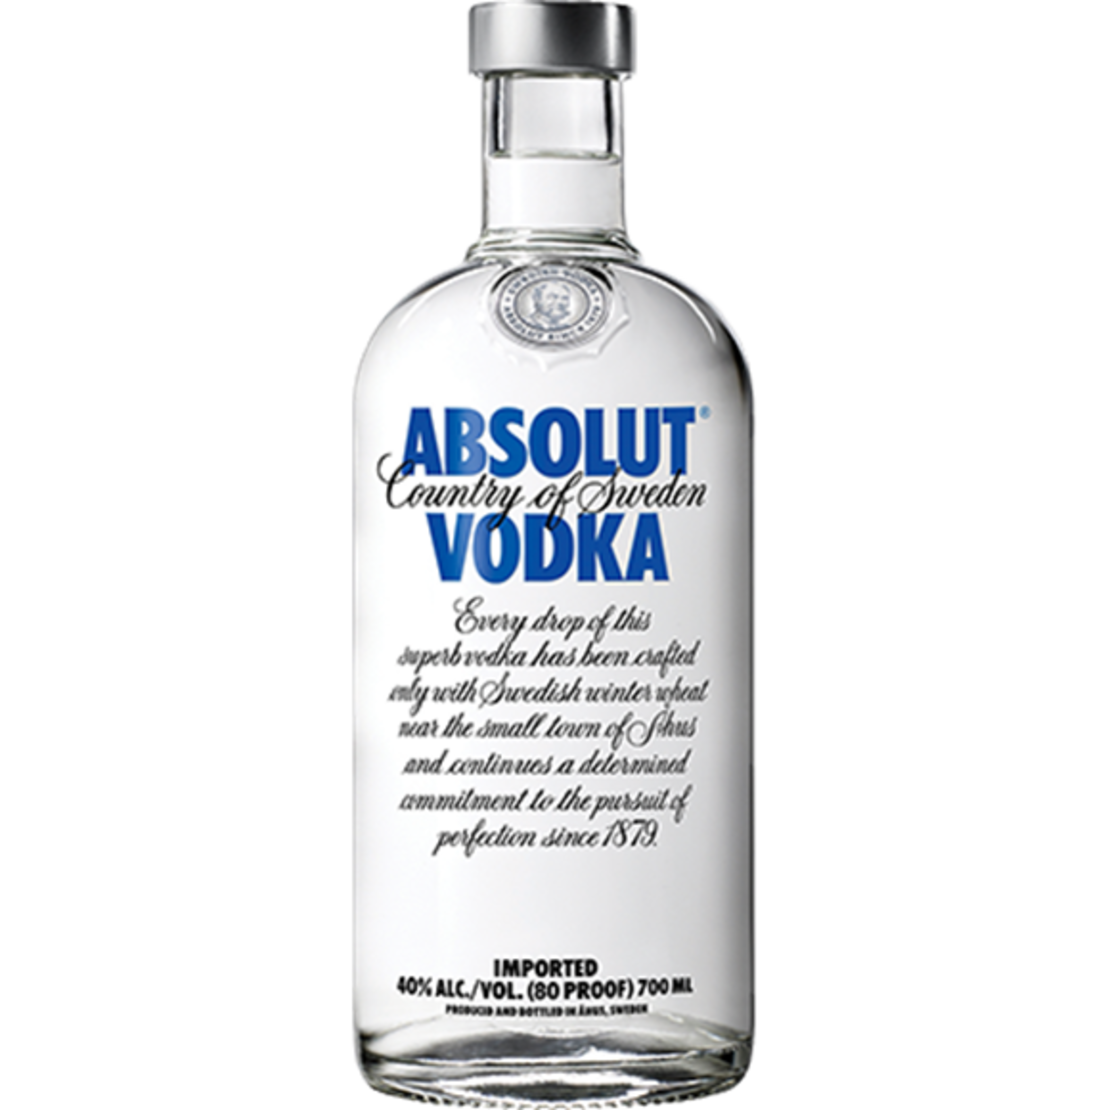 אבסולוט וודקה 1 ליטר- Absolut Vodka